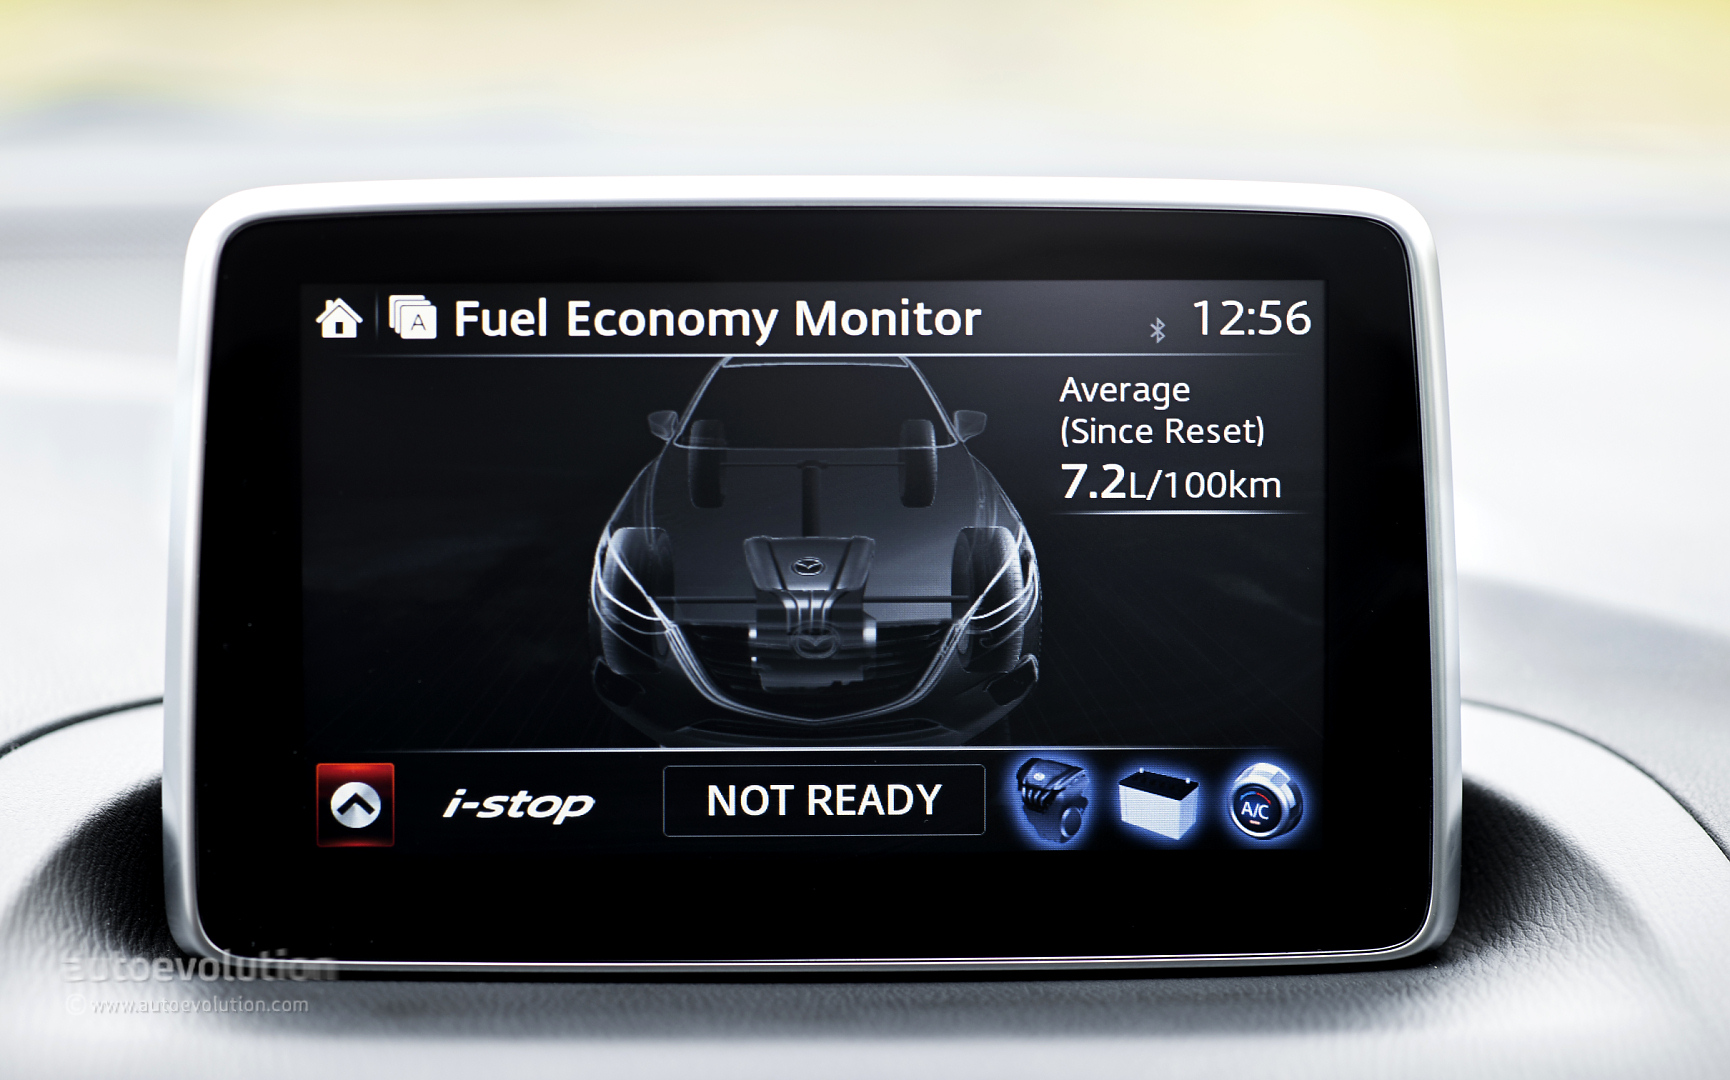 Ford fuel economy monitor fuel economy monitor #2